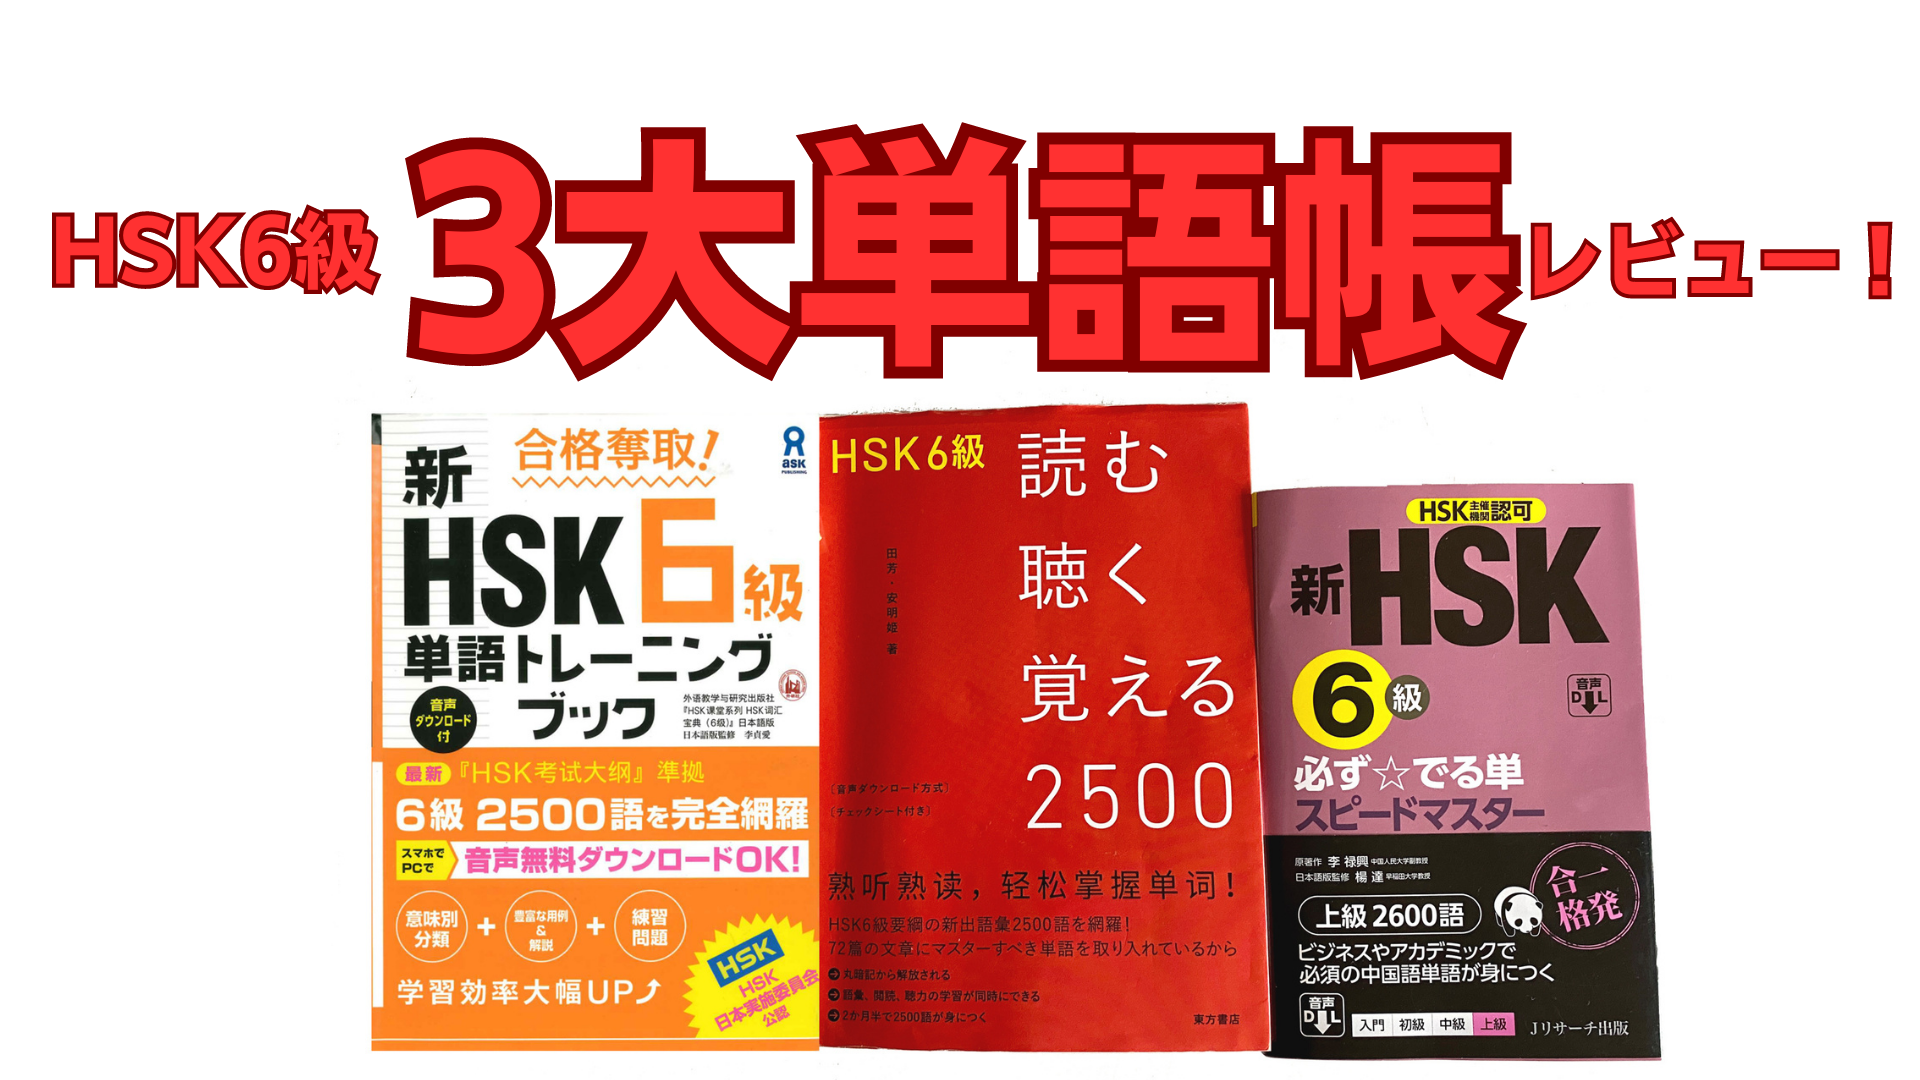 HSK6級三大単語帳レビュー